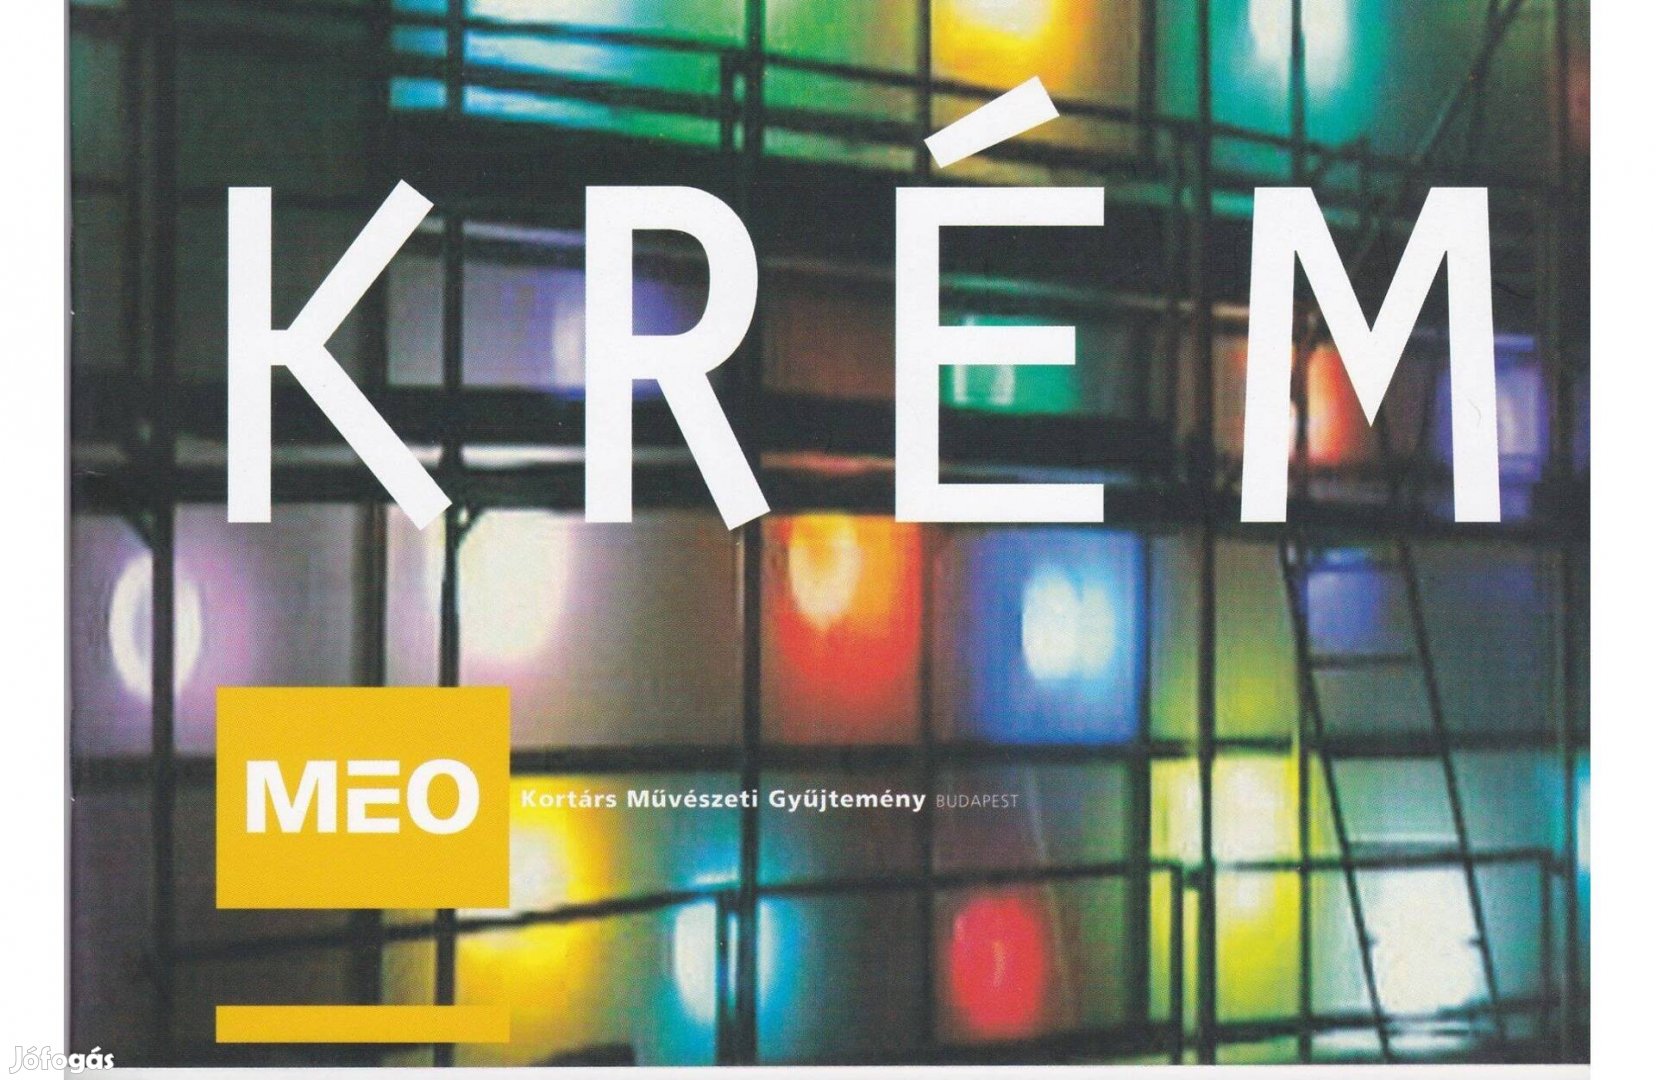 Krém - MEO Kortárs Műv. Gyűjtemény nyitókiállítás, 2001